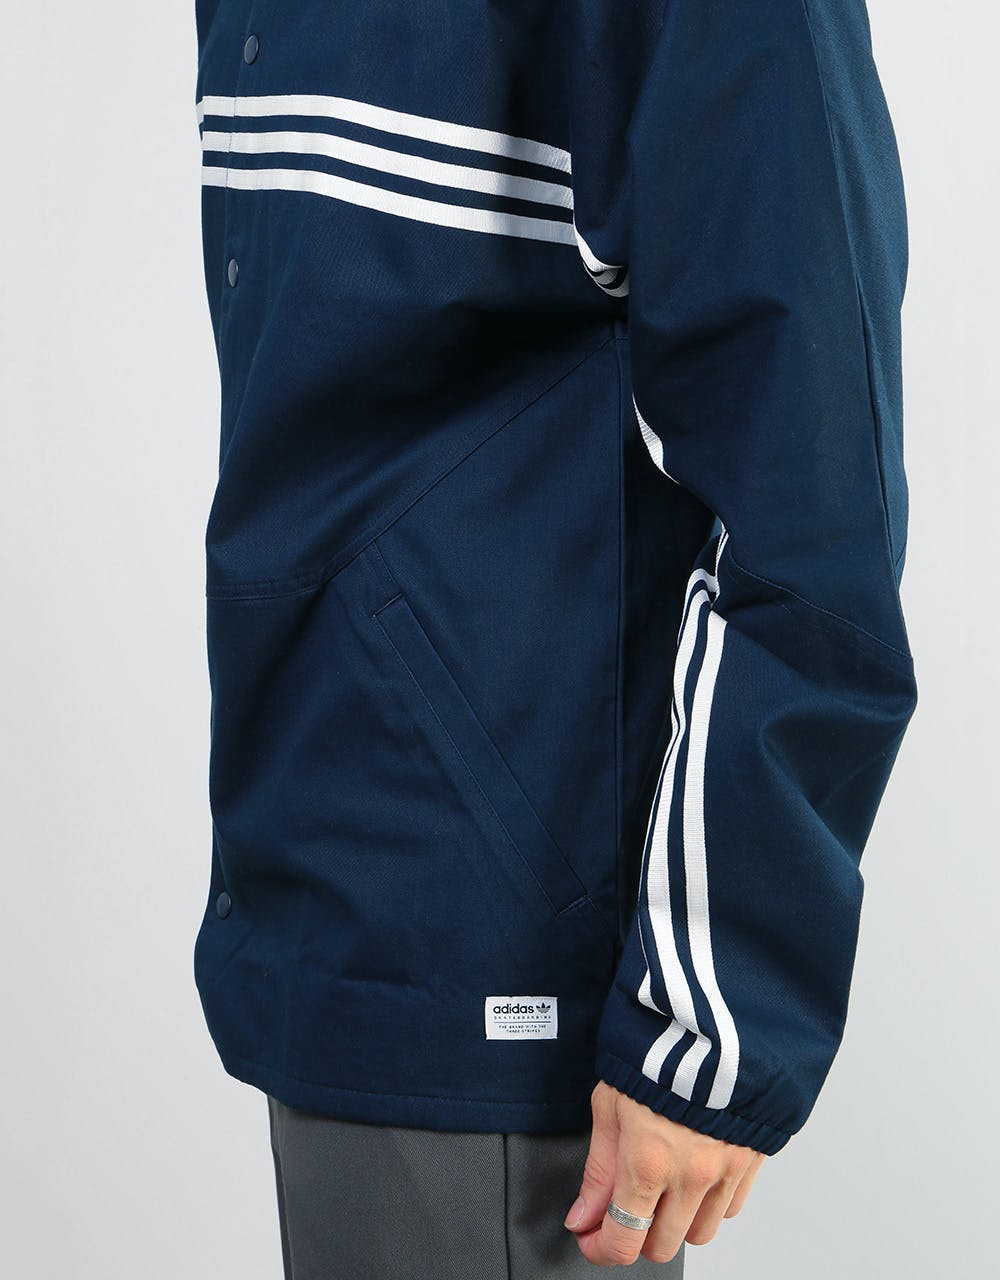 Adidas Schlepp Jacket - Collegiate Navy/White